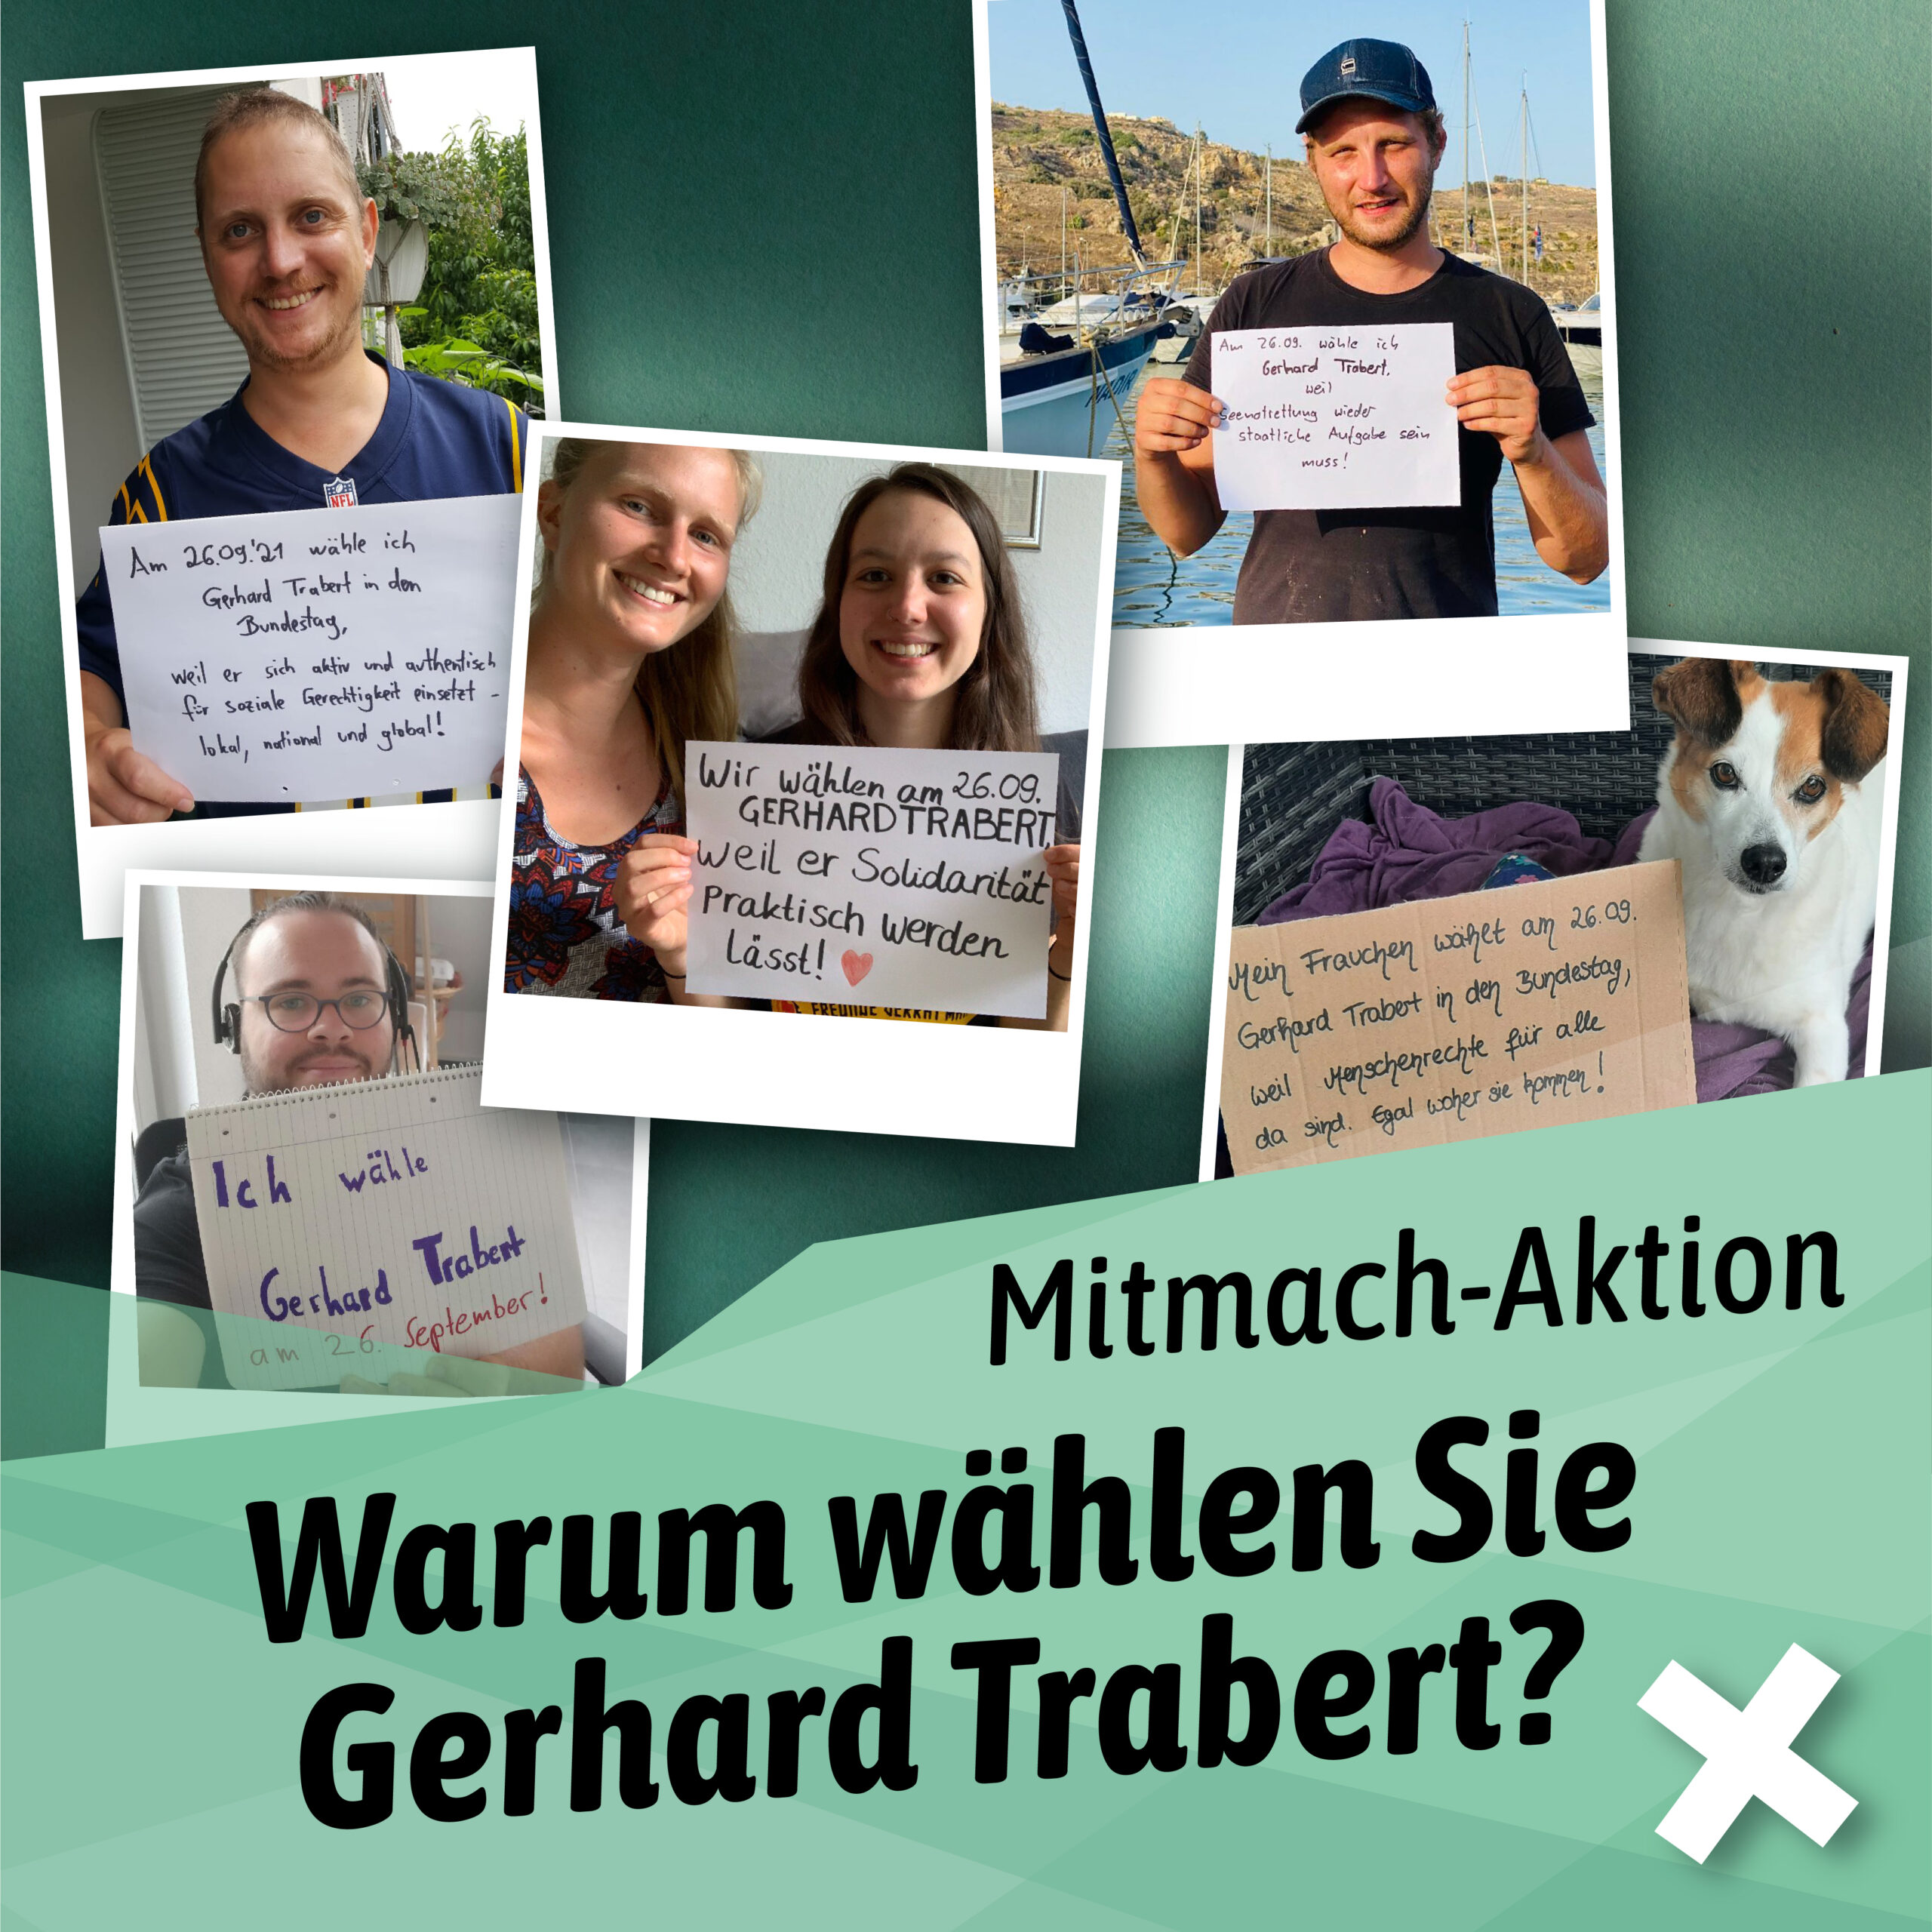 Mitmach-Aktion: Trabert wählen! Flyer mit Menschen und einem Hund, die selbstgemachte Plakate halten.